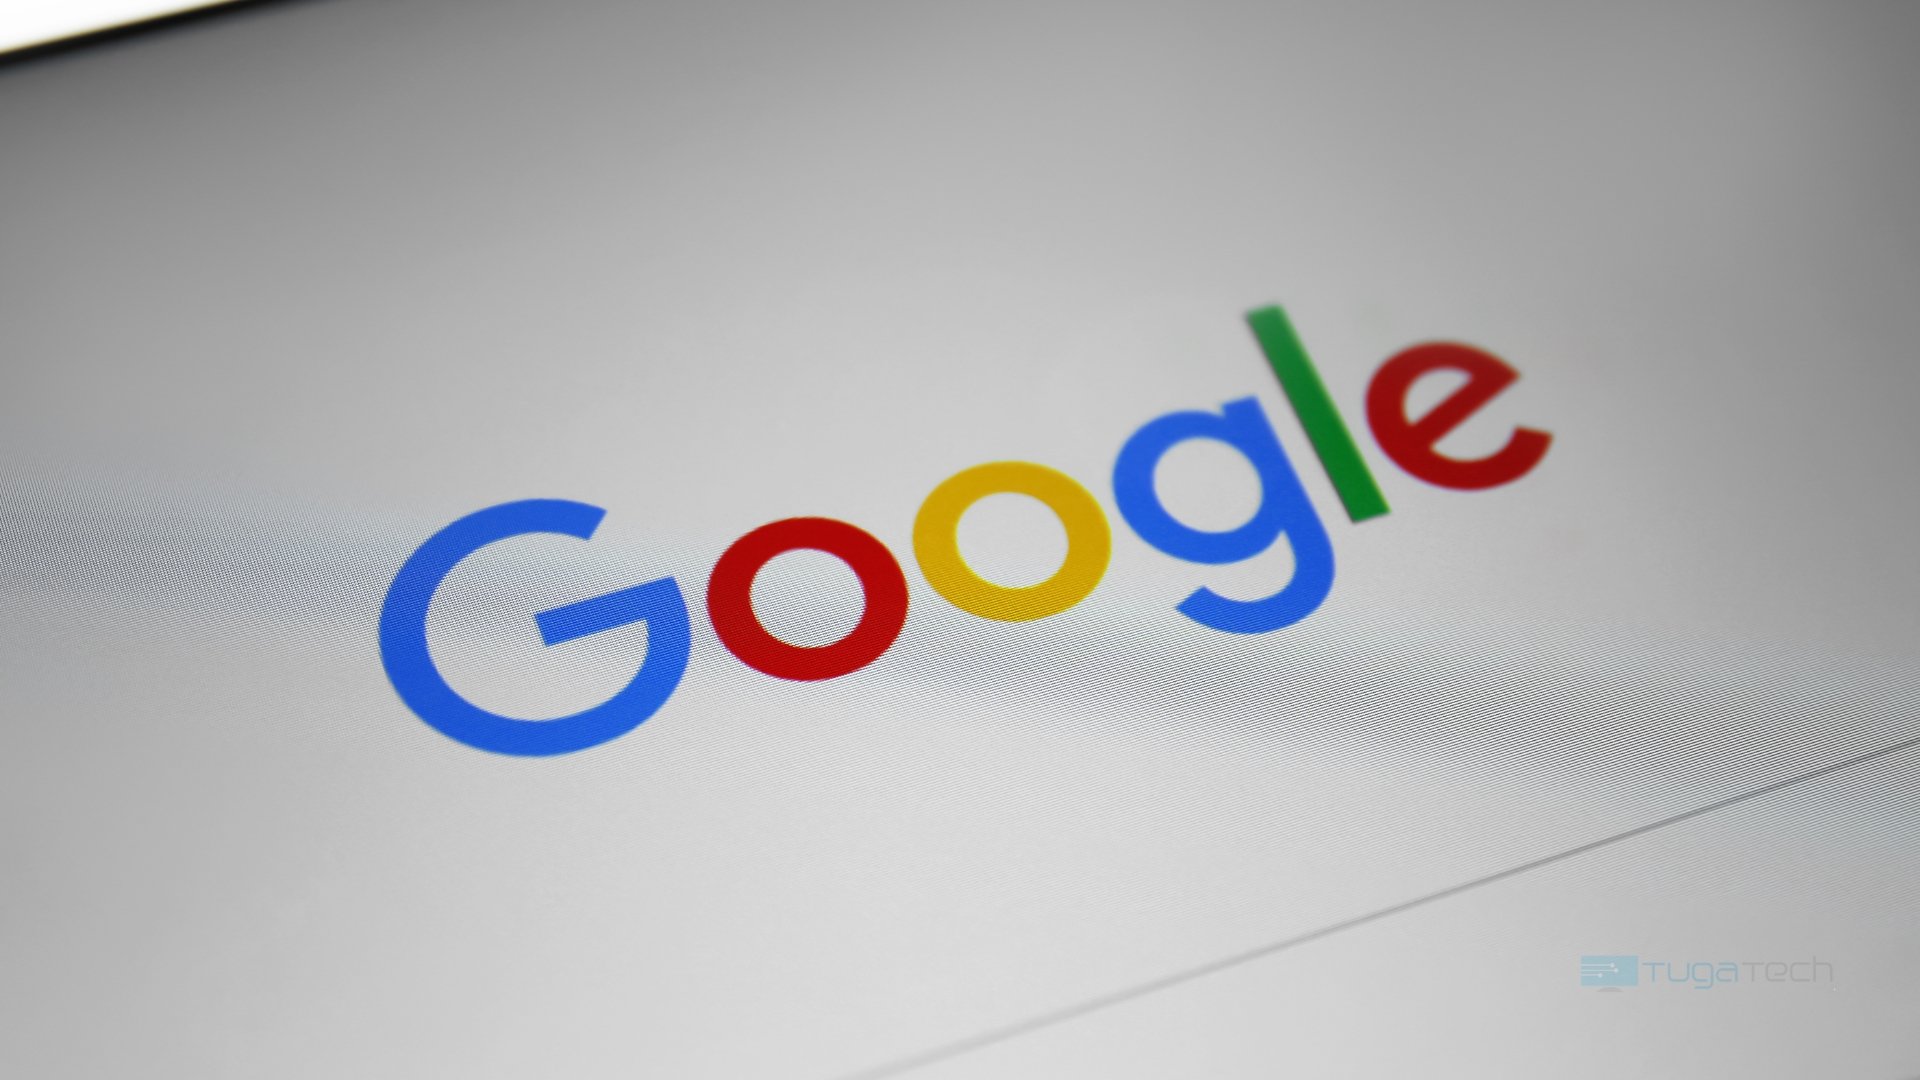 Site de pesquisa da Google com logo da empresa em destaque